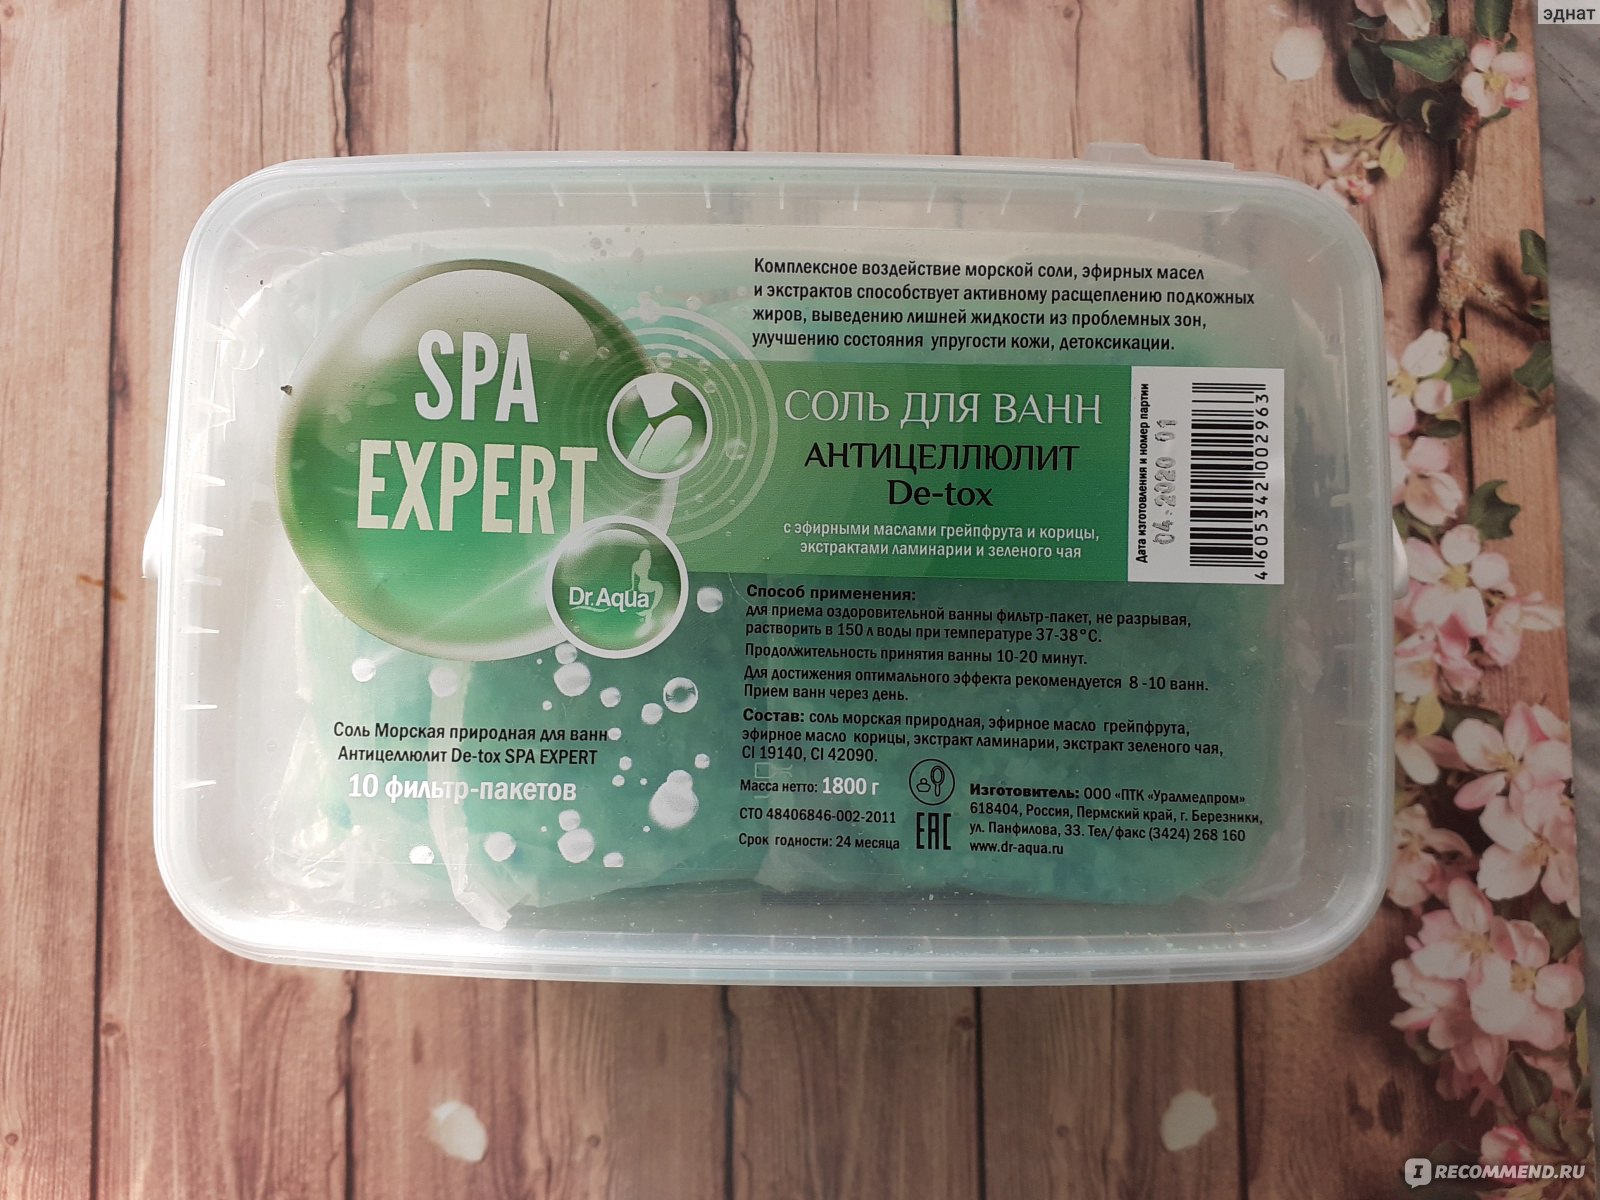 Соль для ванн Dr. Aqua Антицеллюлит De-tox SPA EXPERT фото